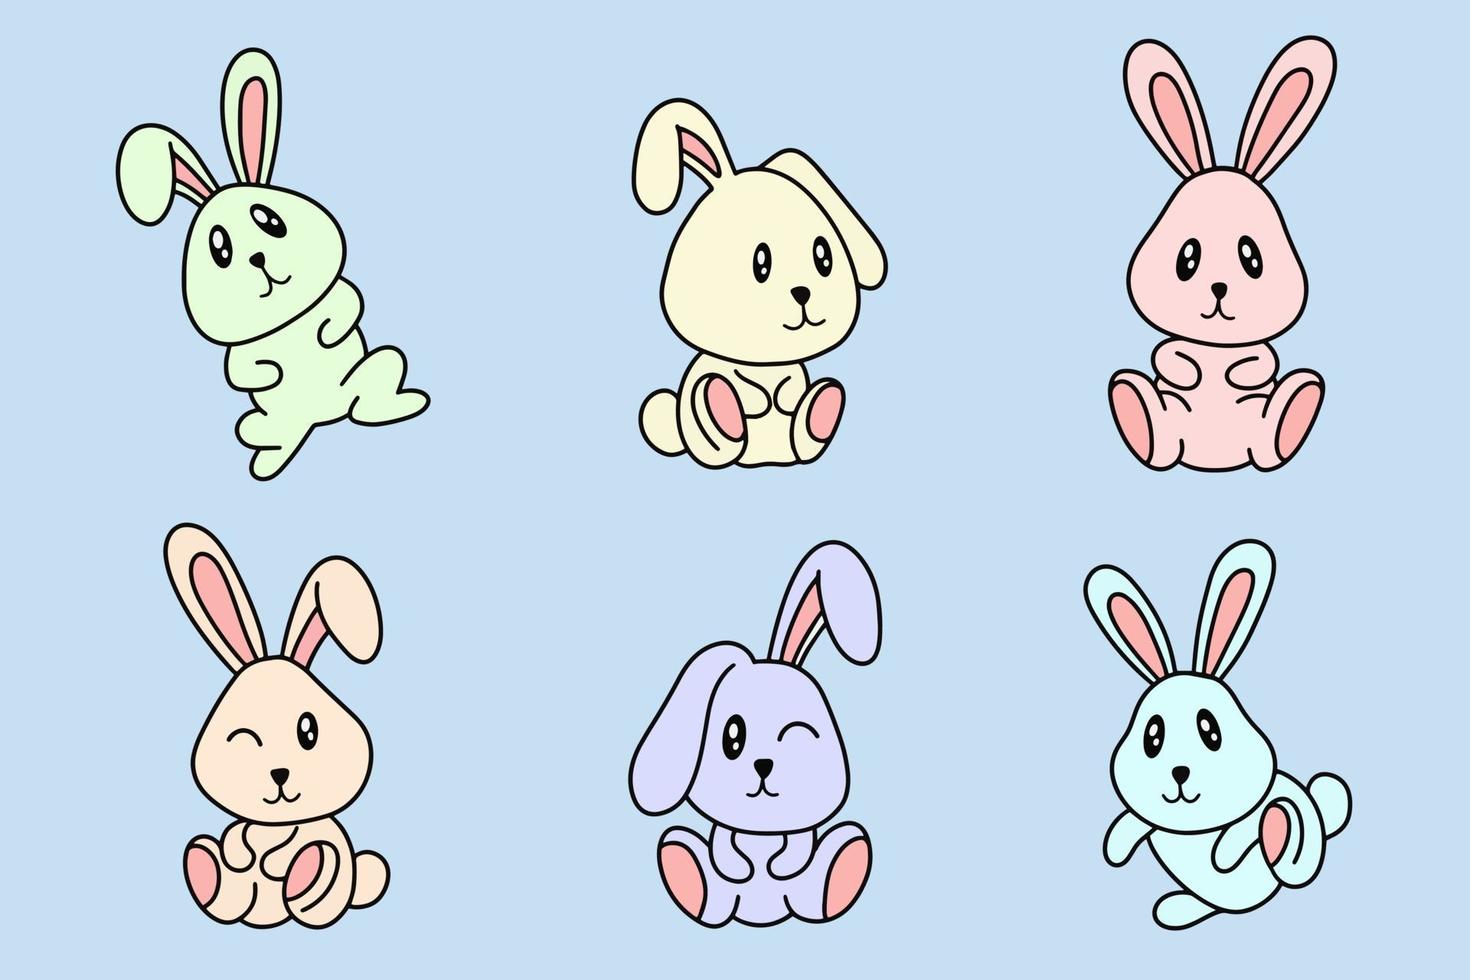 set samling söt kanin bunny pose ansikte öron platt konst djur doodles vektor